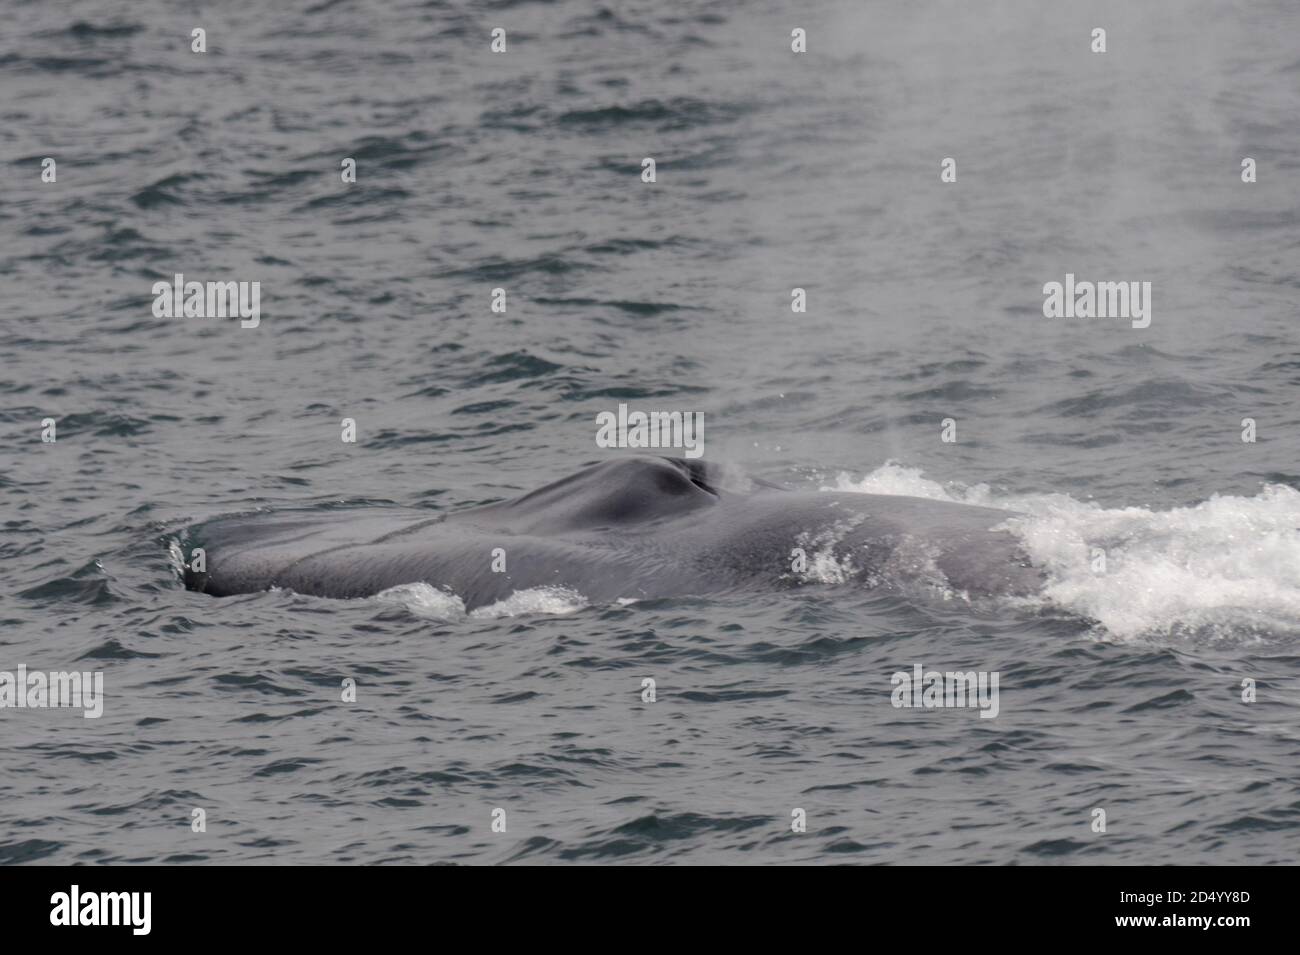 Baleine bleue (Balaenoptera musculus), nageant au large de la côte nord de l'Atlantique, soufflant de l'eau à travers son trou, Islande Banque D'Images